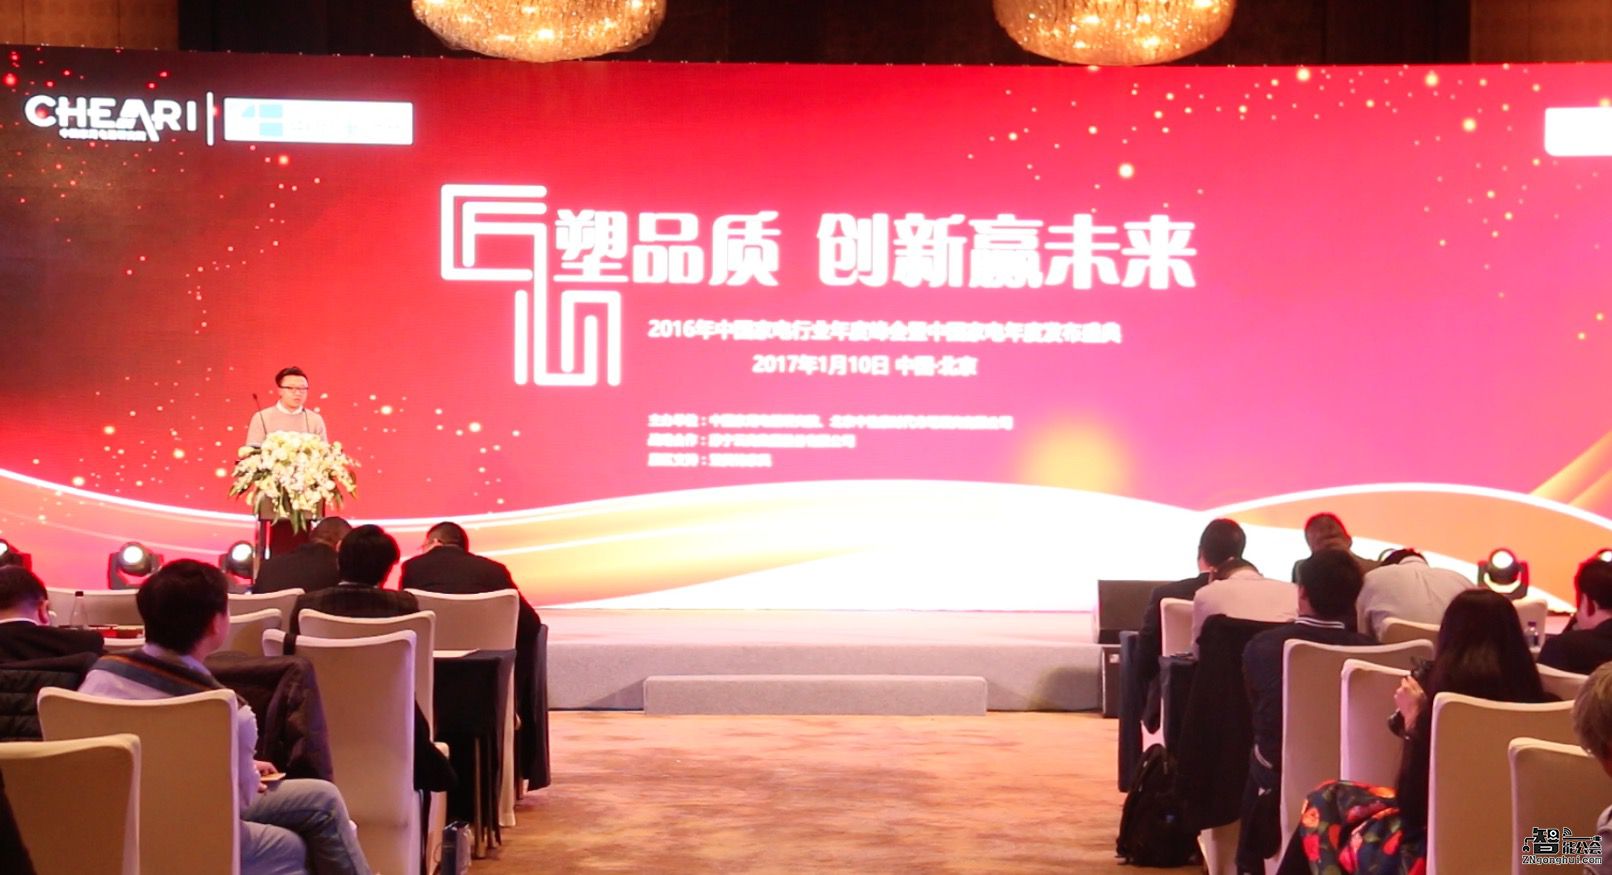 2016年中国家电行业年度峰会暨发布盛典成功召开 智能公会